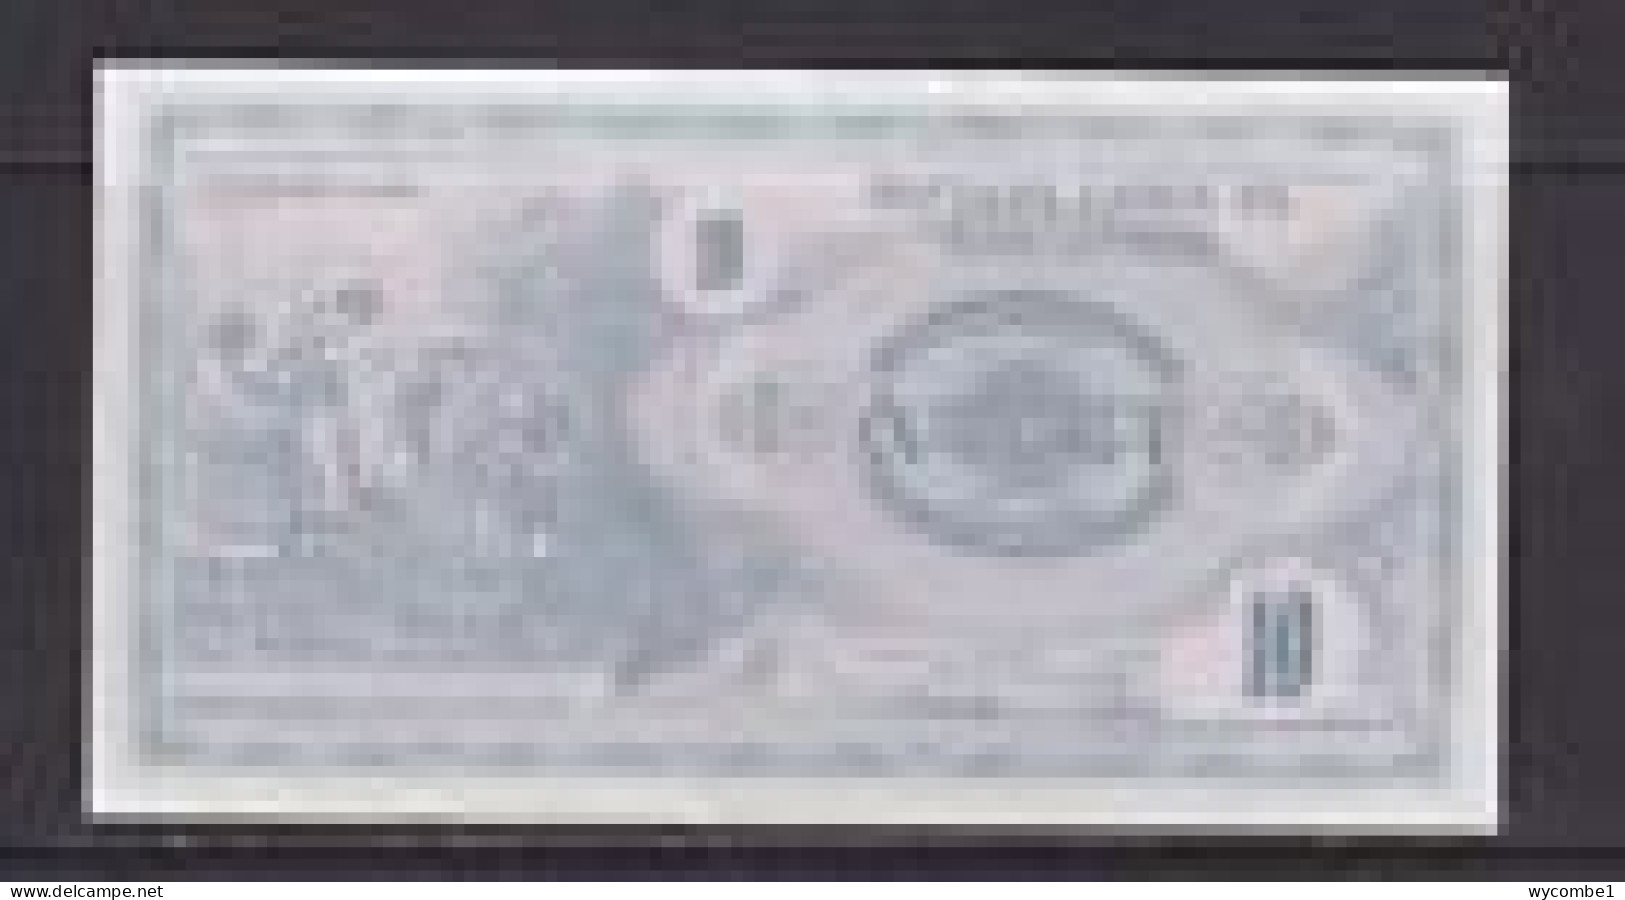 MACEDONIA - 1992 10 Denari Circulated Banknote - North Macedonia